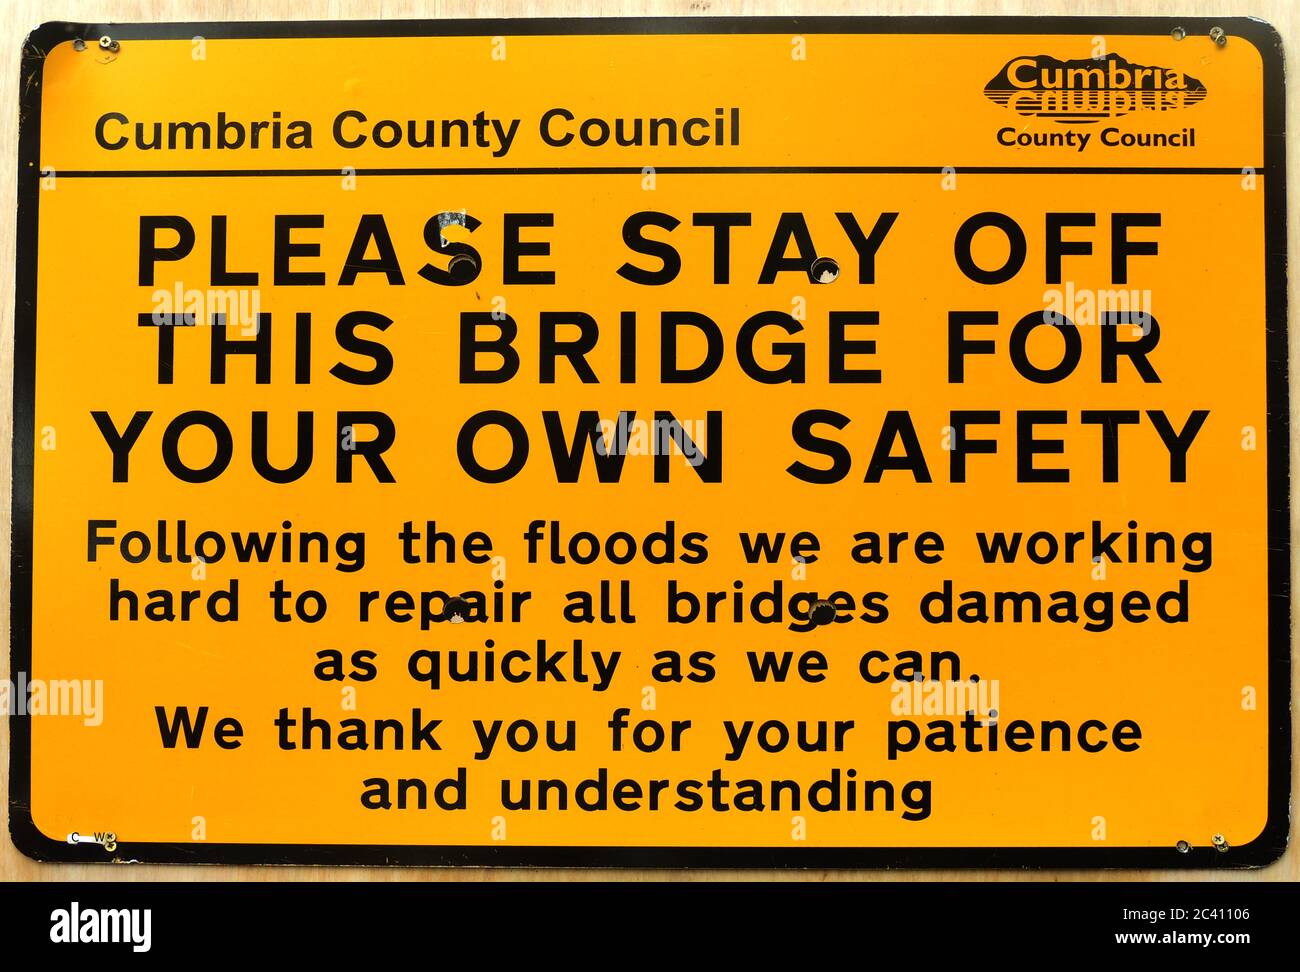 Cumbria County Council avis de pont dangereux (des inondations britanniques dévastatrices de 2017) S'IL VOUS PLAÎT RESTER hors DE CE PONT POUR VOTRE PROPRE SÉCURITÉ. (Certaines parties de Cumbria ont vu plus de 8 pouces (206 mm) de pluie tomber en moins de 24 heures, fermant les routes et les écoles et causant beaucoup de destruction, tuant au moins une personne. 45,000 maisons étaient sans électricité) Banque D'Images